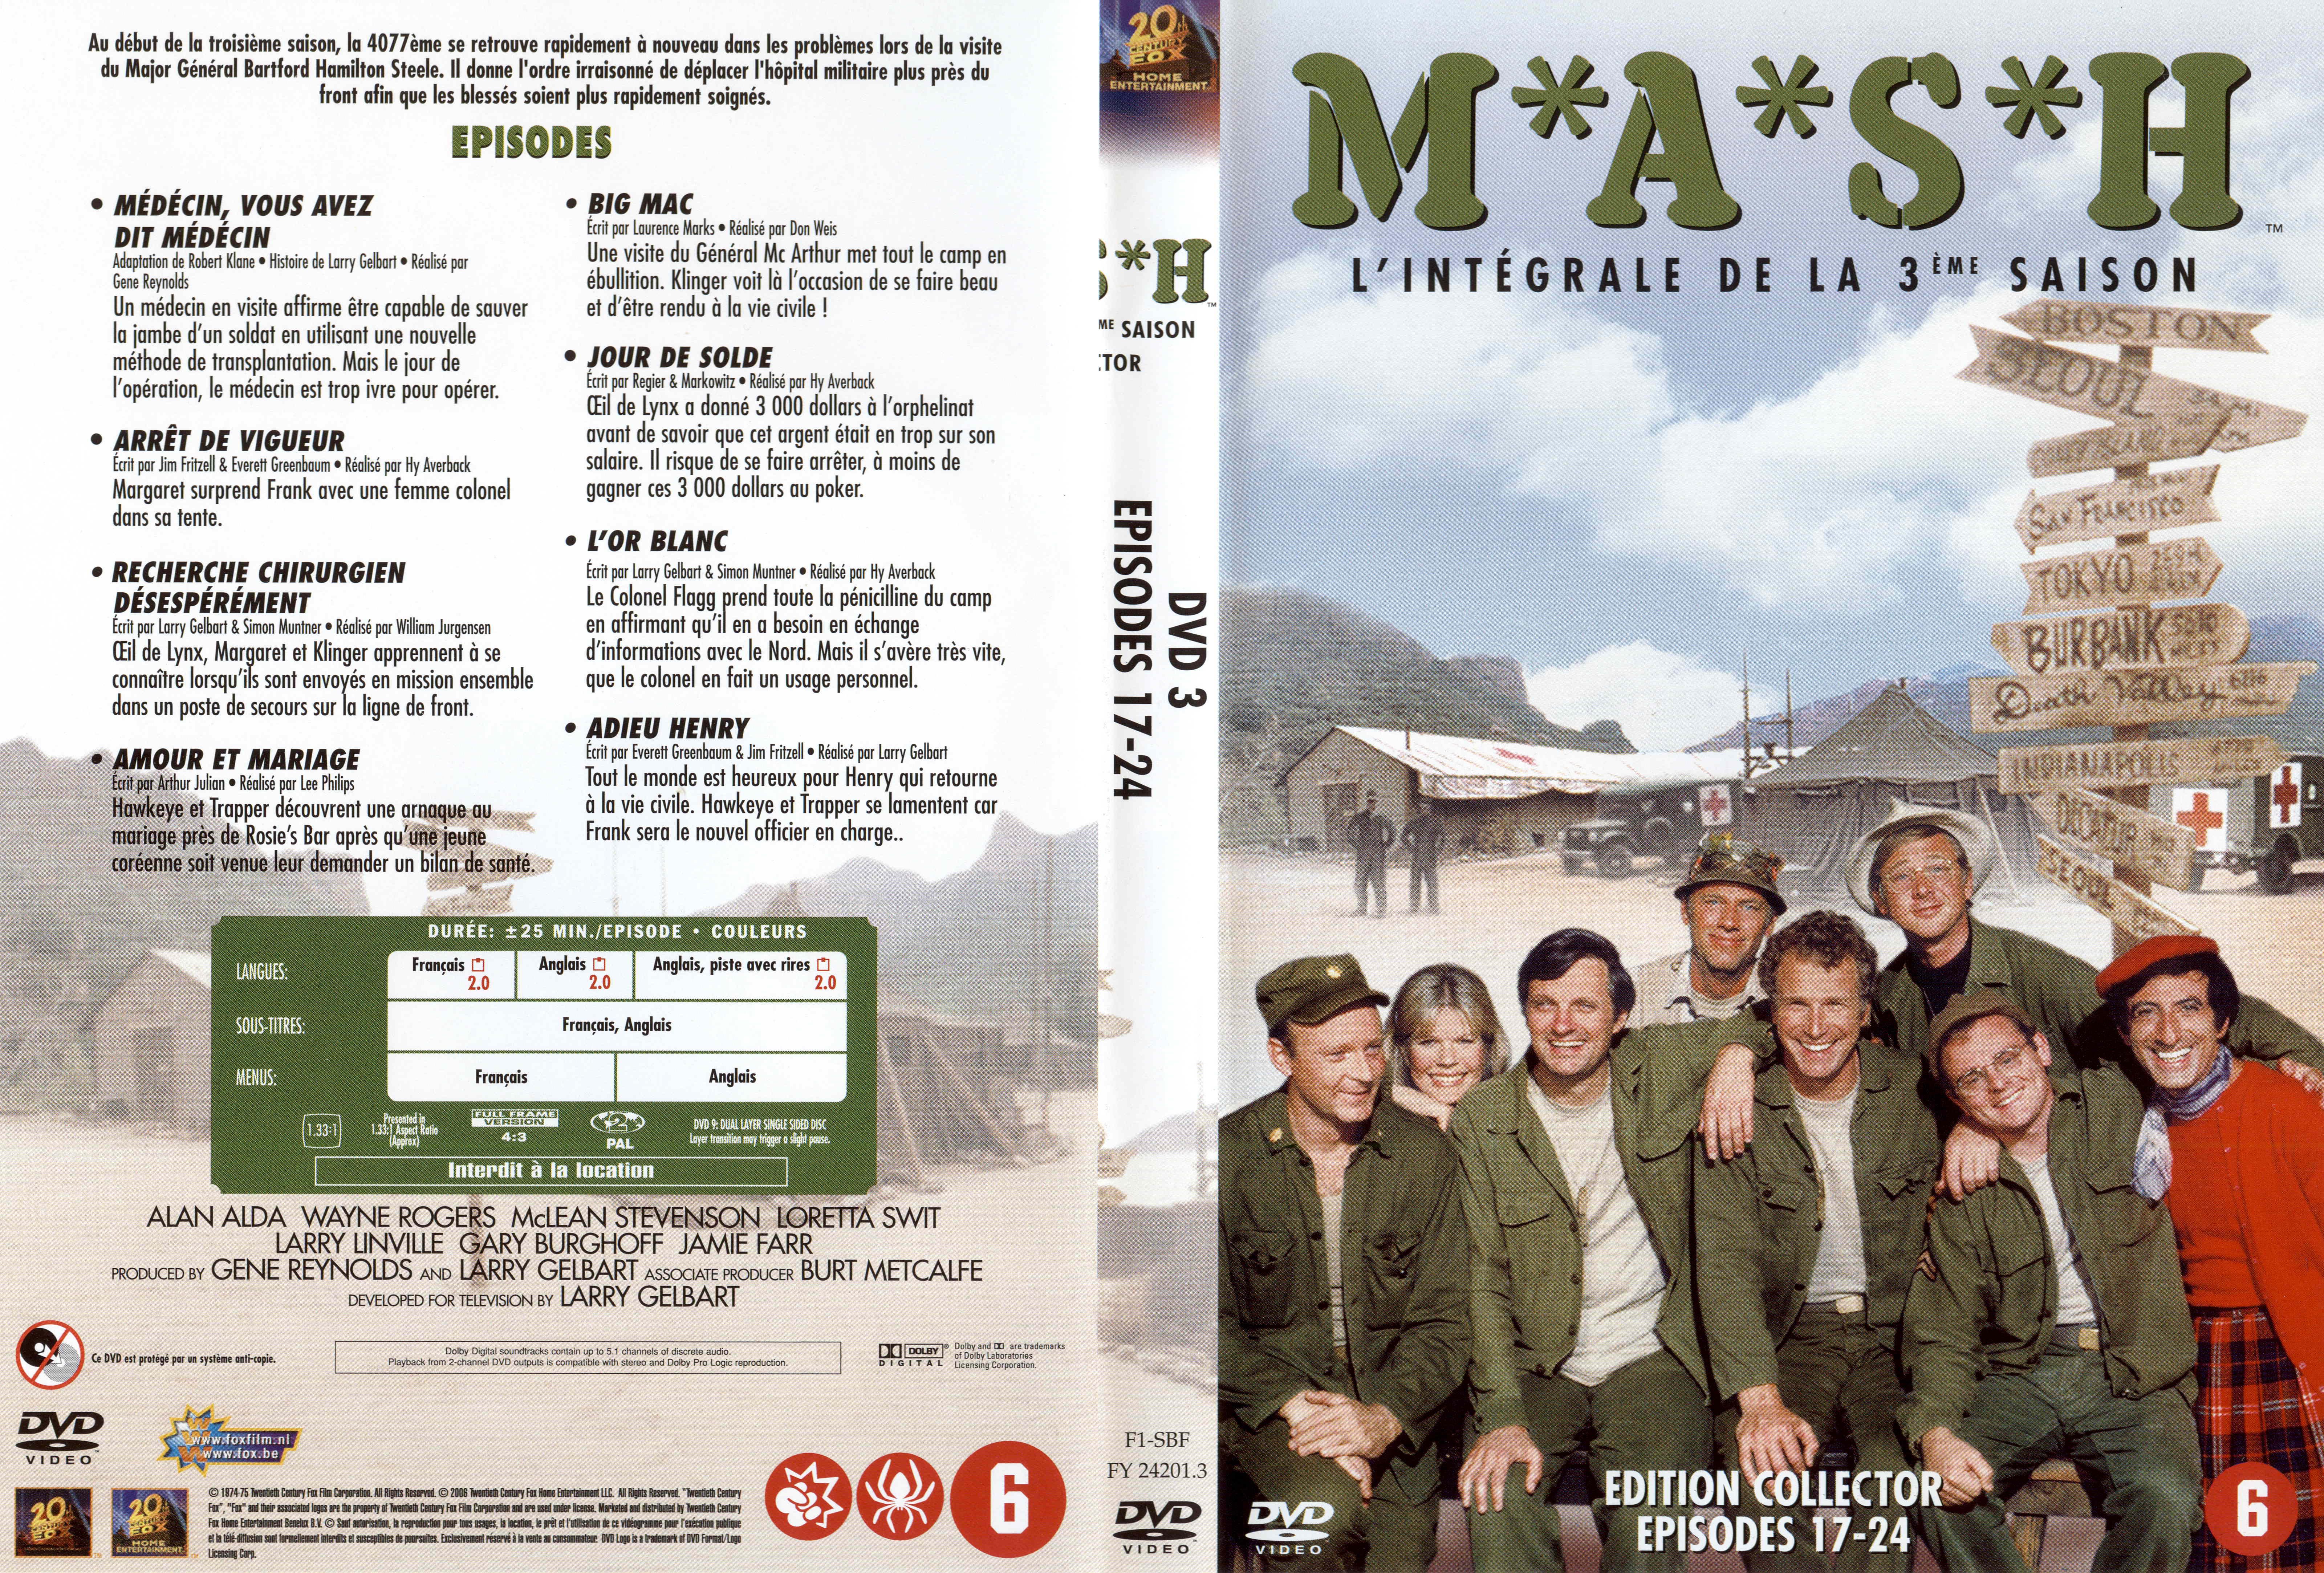 Jaquette DVD MASH Saison 3 DVD 3